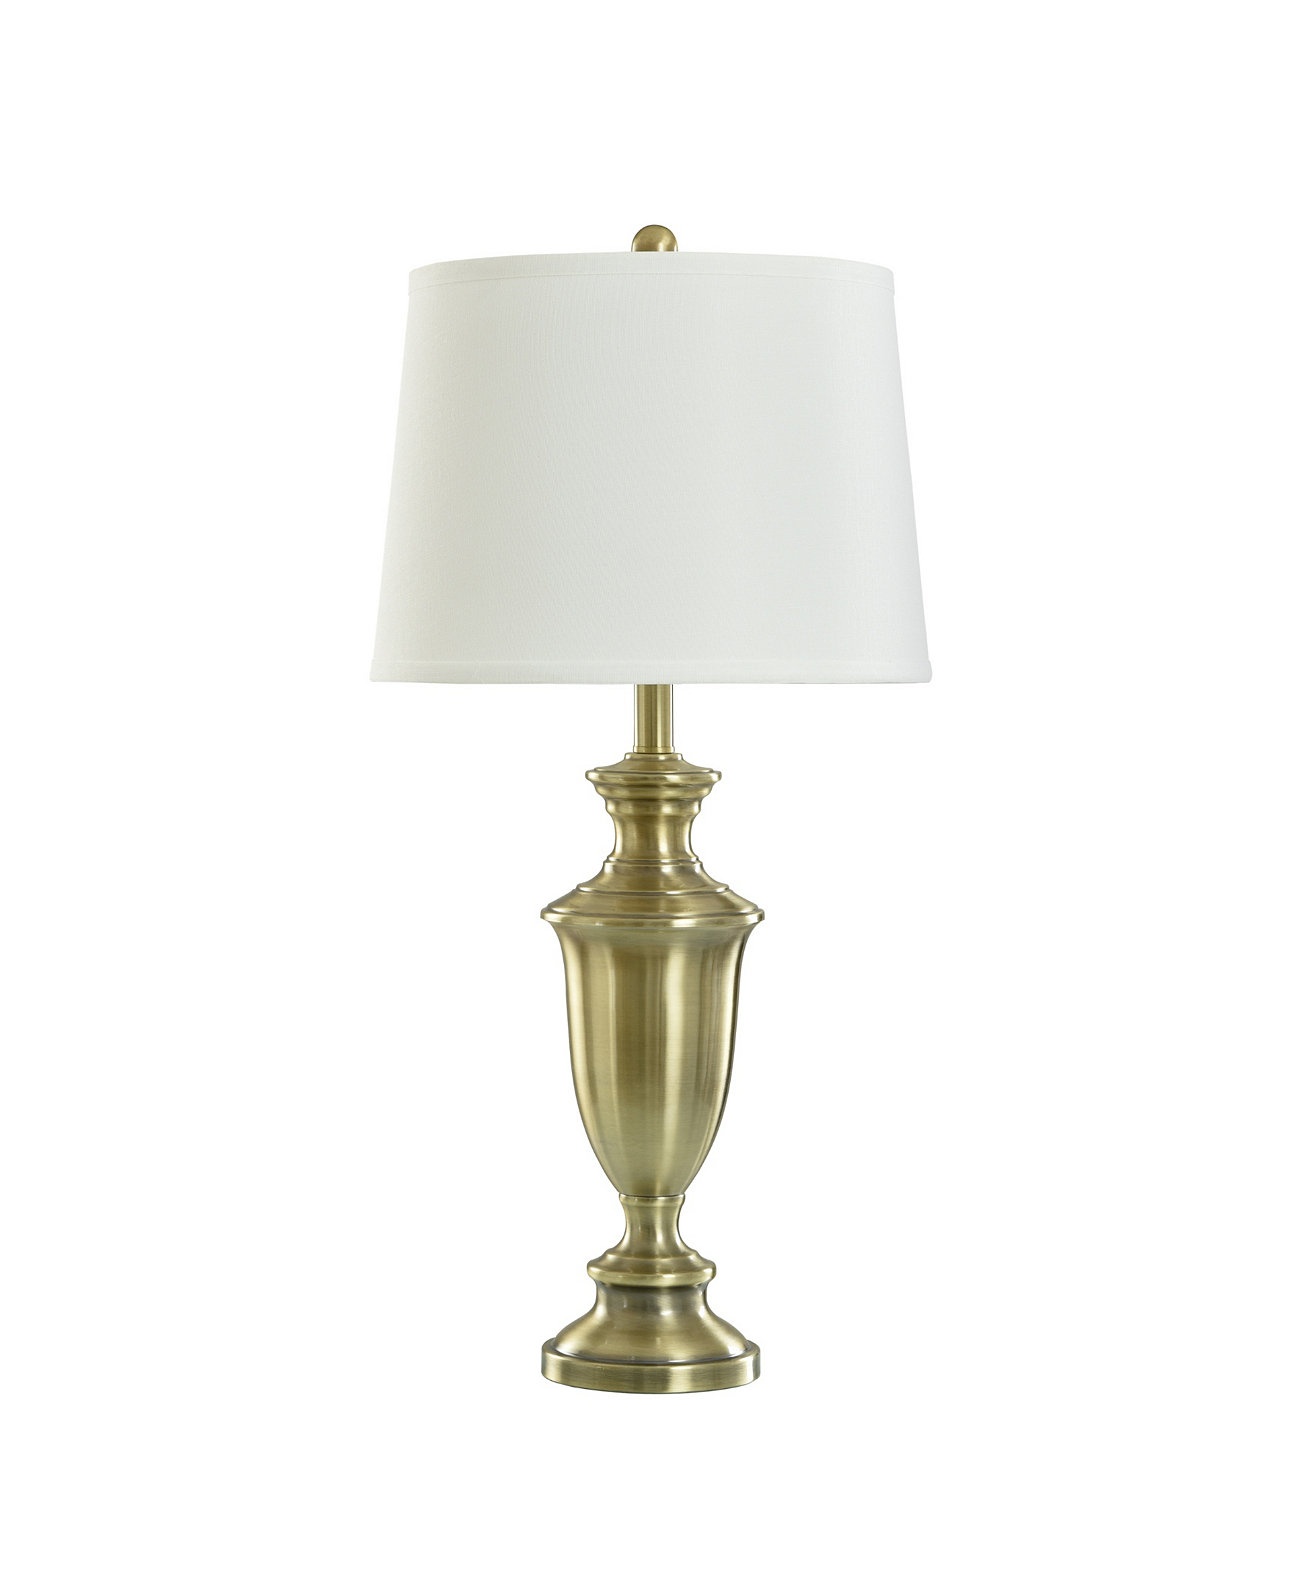 Настольная лампа Steele StyleCraft Home Collection